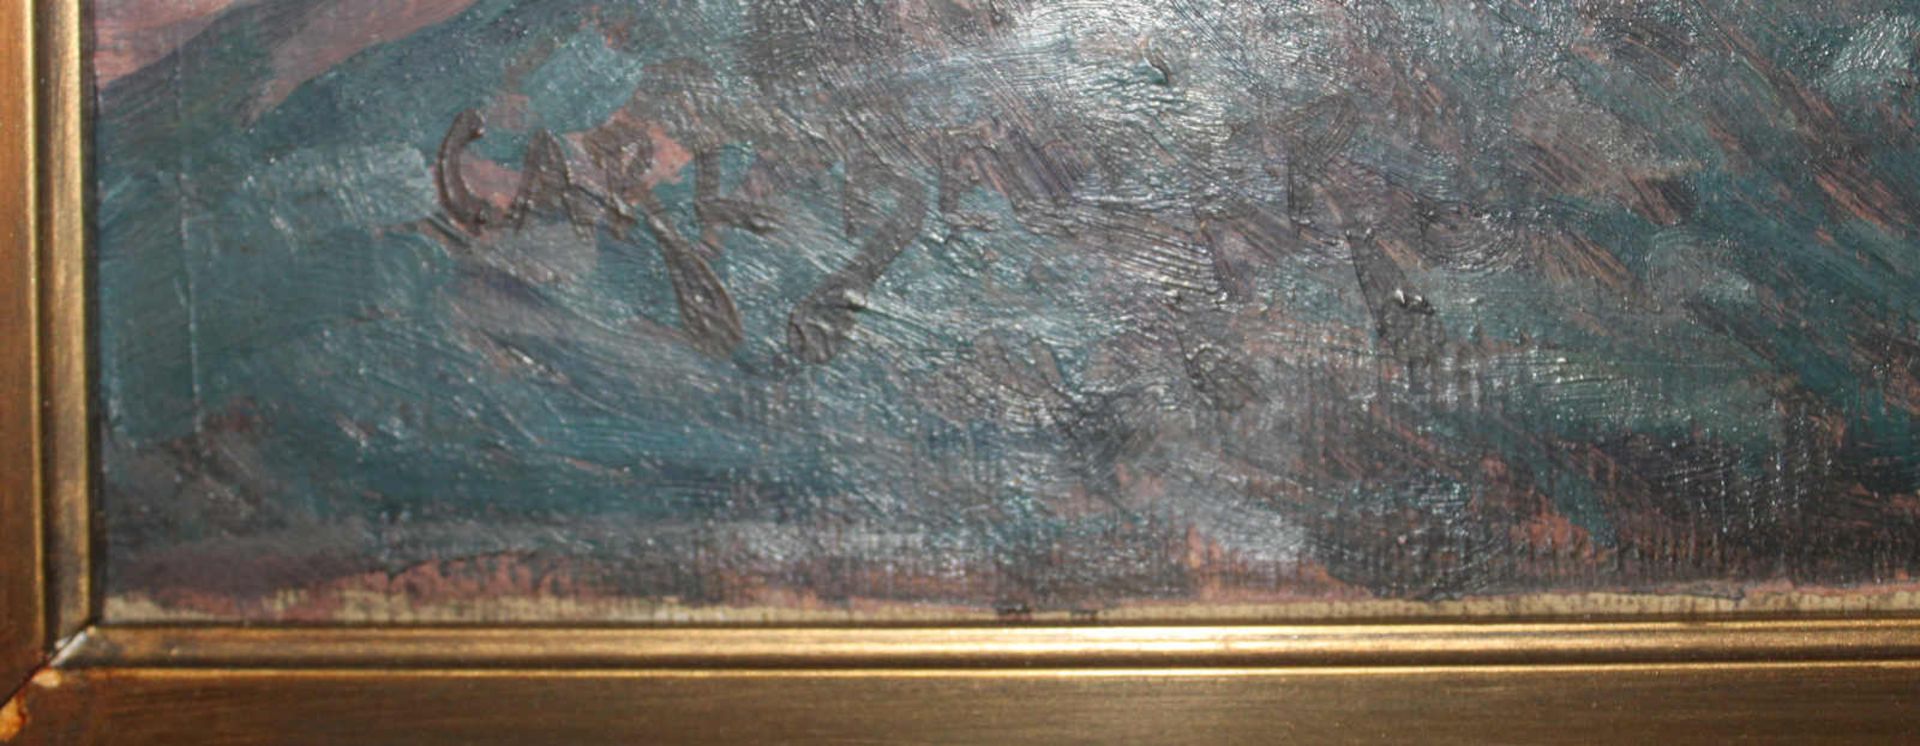 Segelboote im Wellengang. Öl auf Leinwand unten links ungedeutet signiert, Datierung um 1910/30, - Bild 3 aus 4